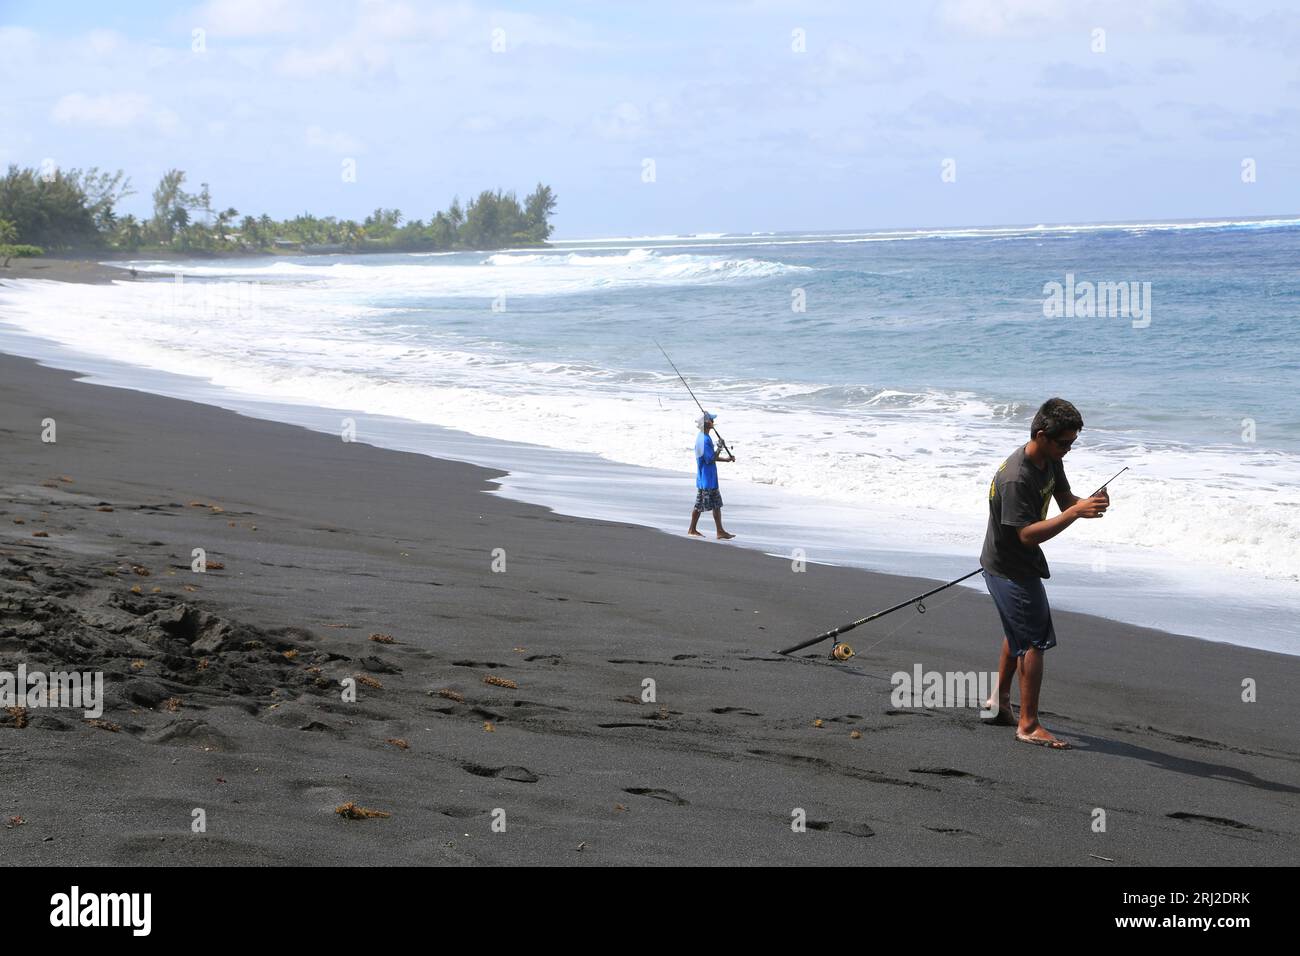 Pêche à la ligne sur la plage de sable noir volcanique de Papara à Tahiti en Polynésie française. Cette plage de Taharuu est connue pour ses belles va Stock Photo